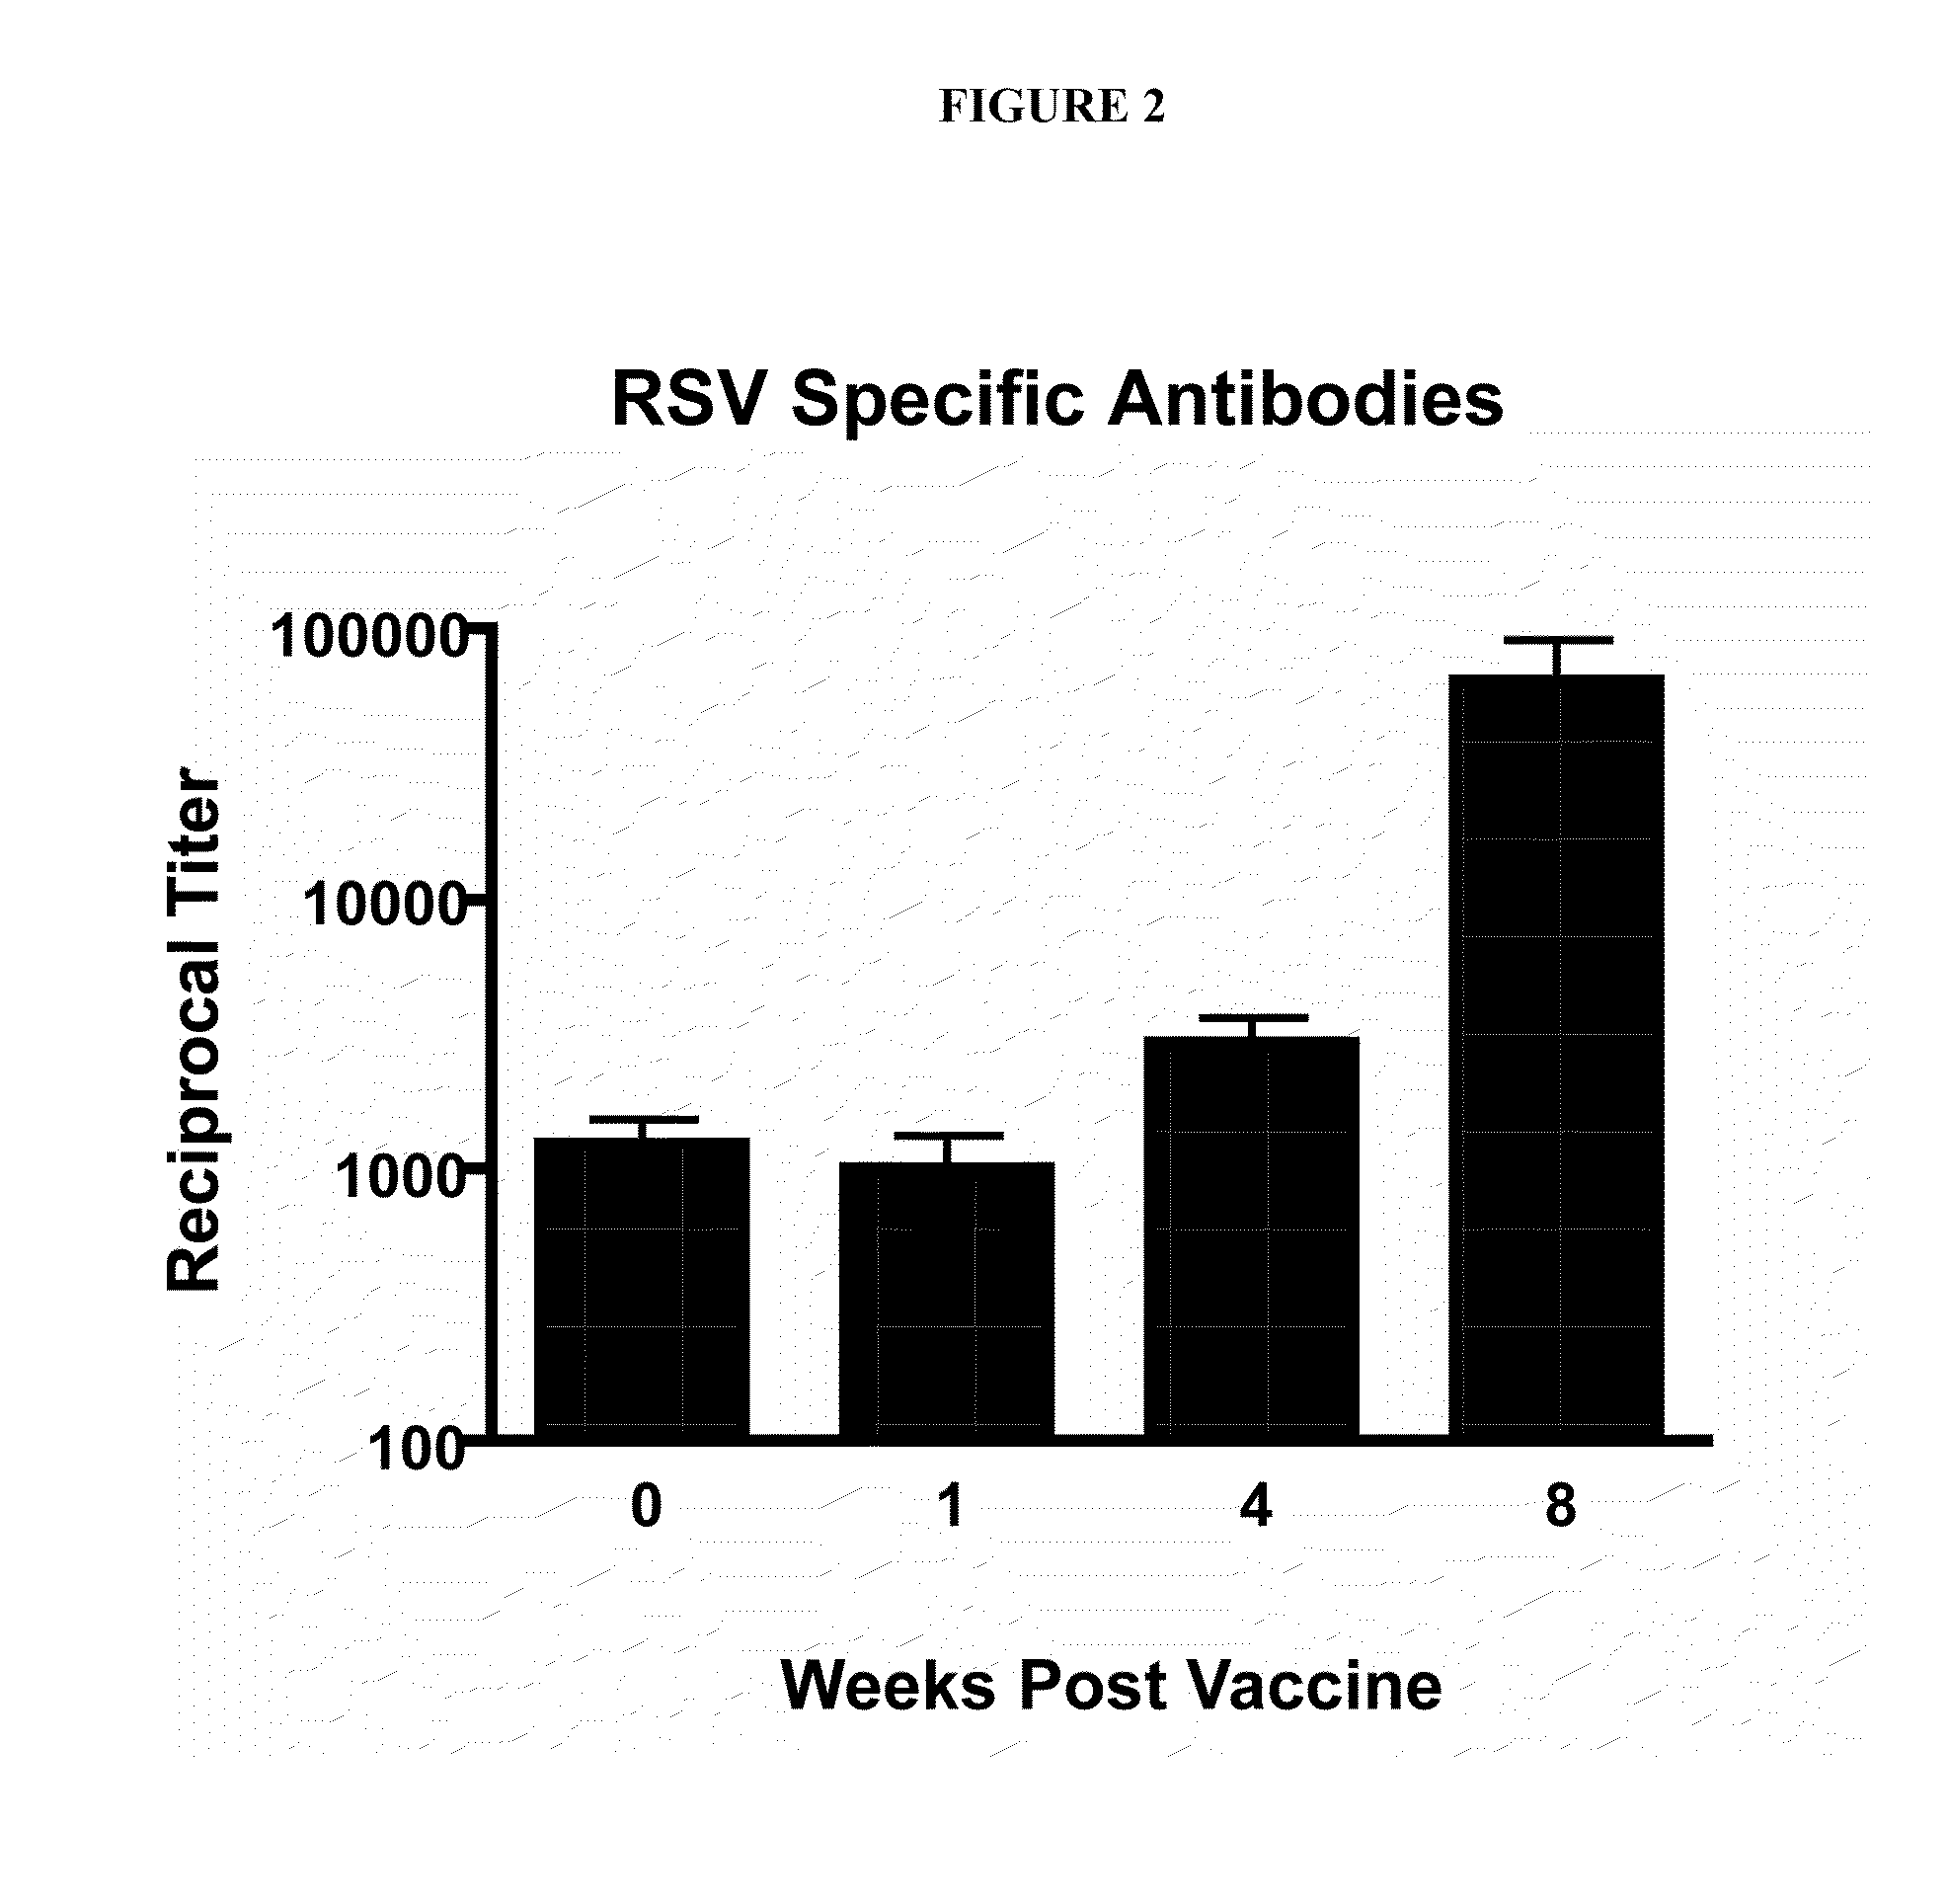 Nanoemulsion vaccines